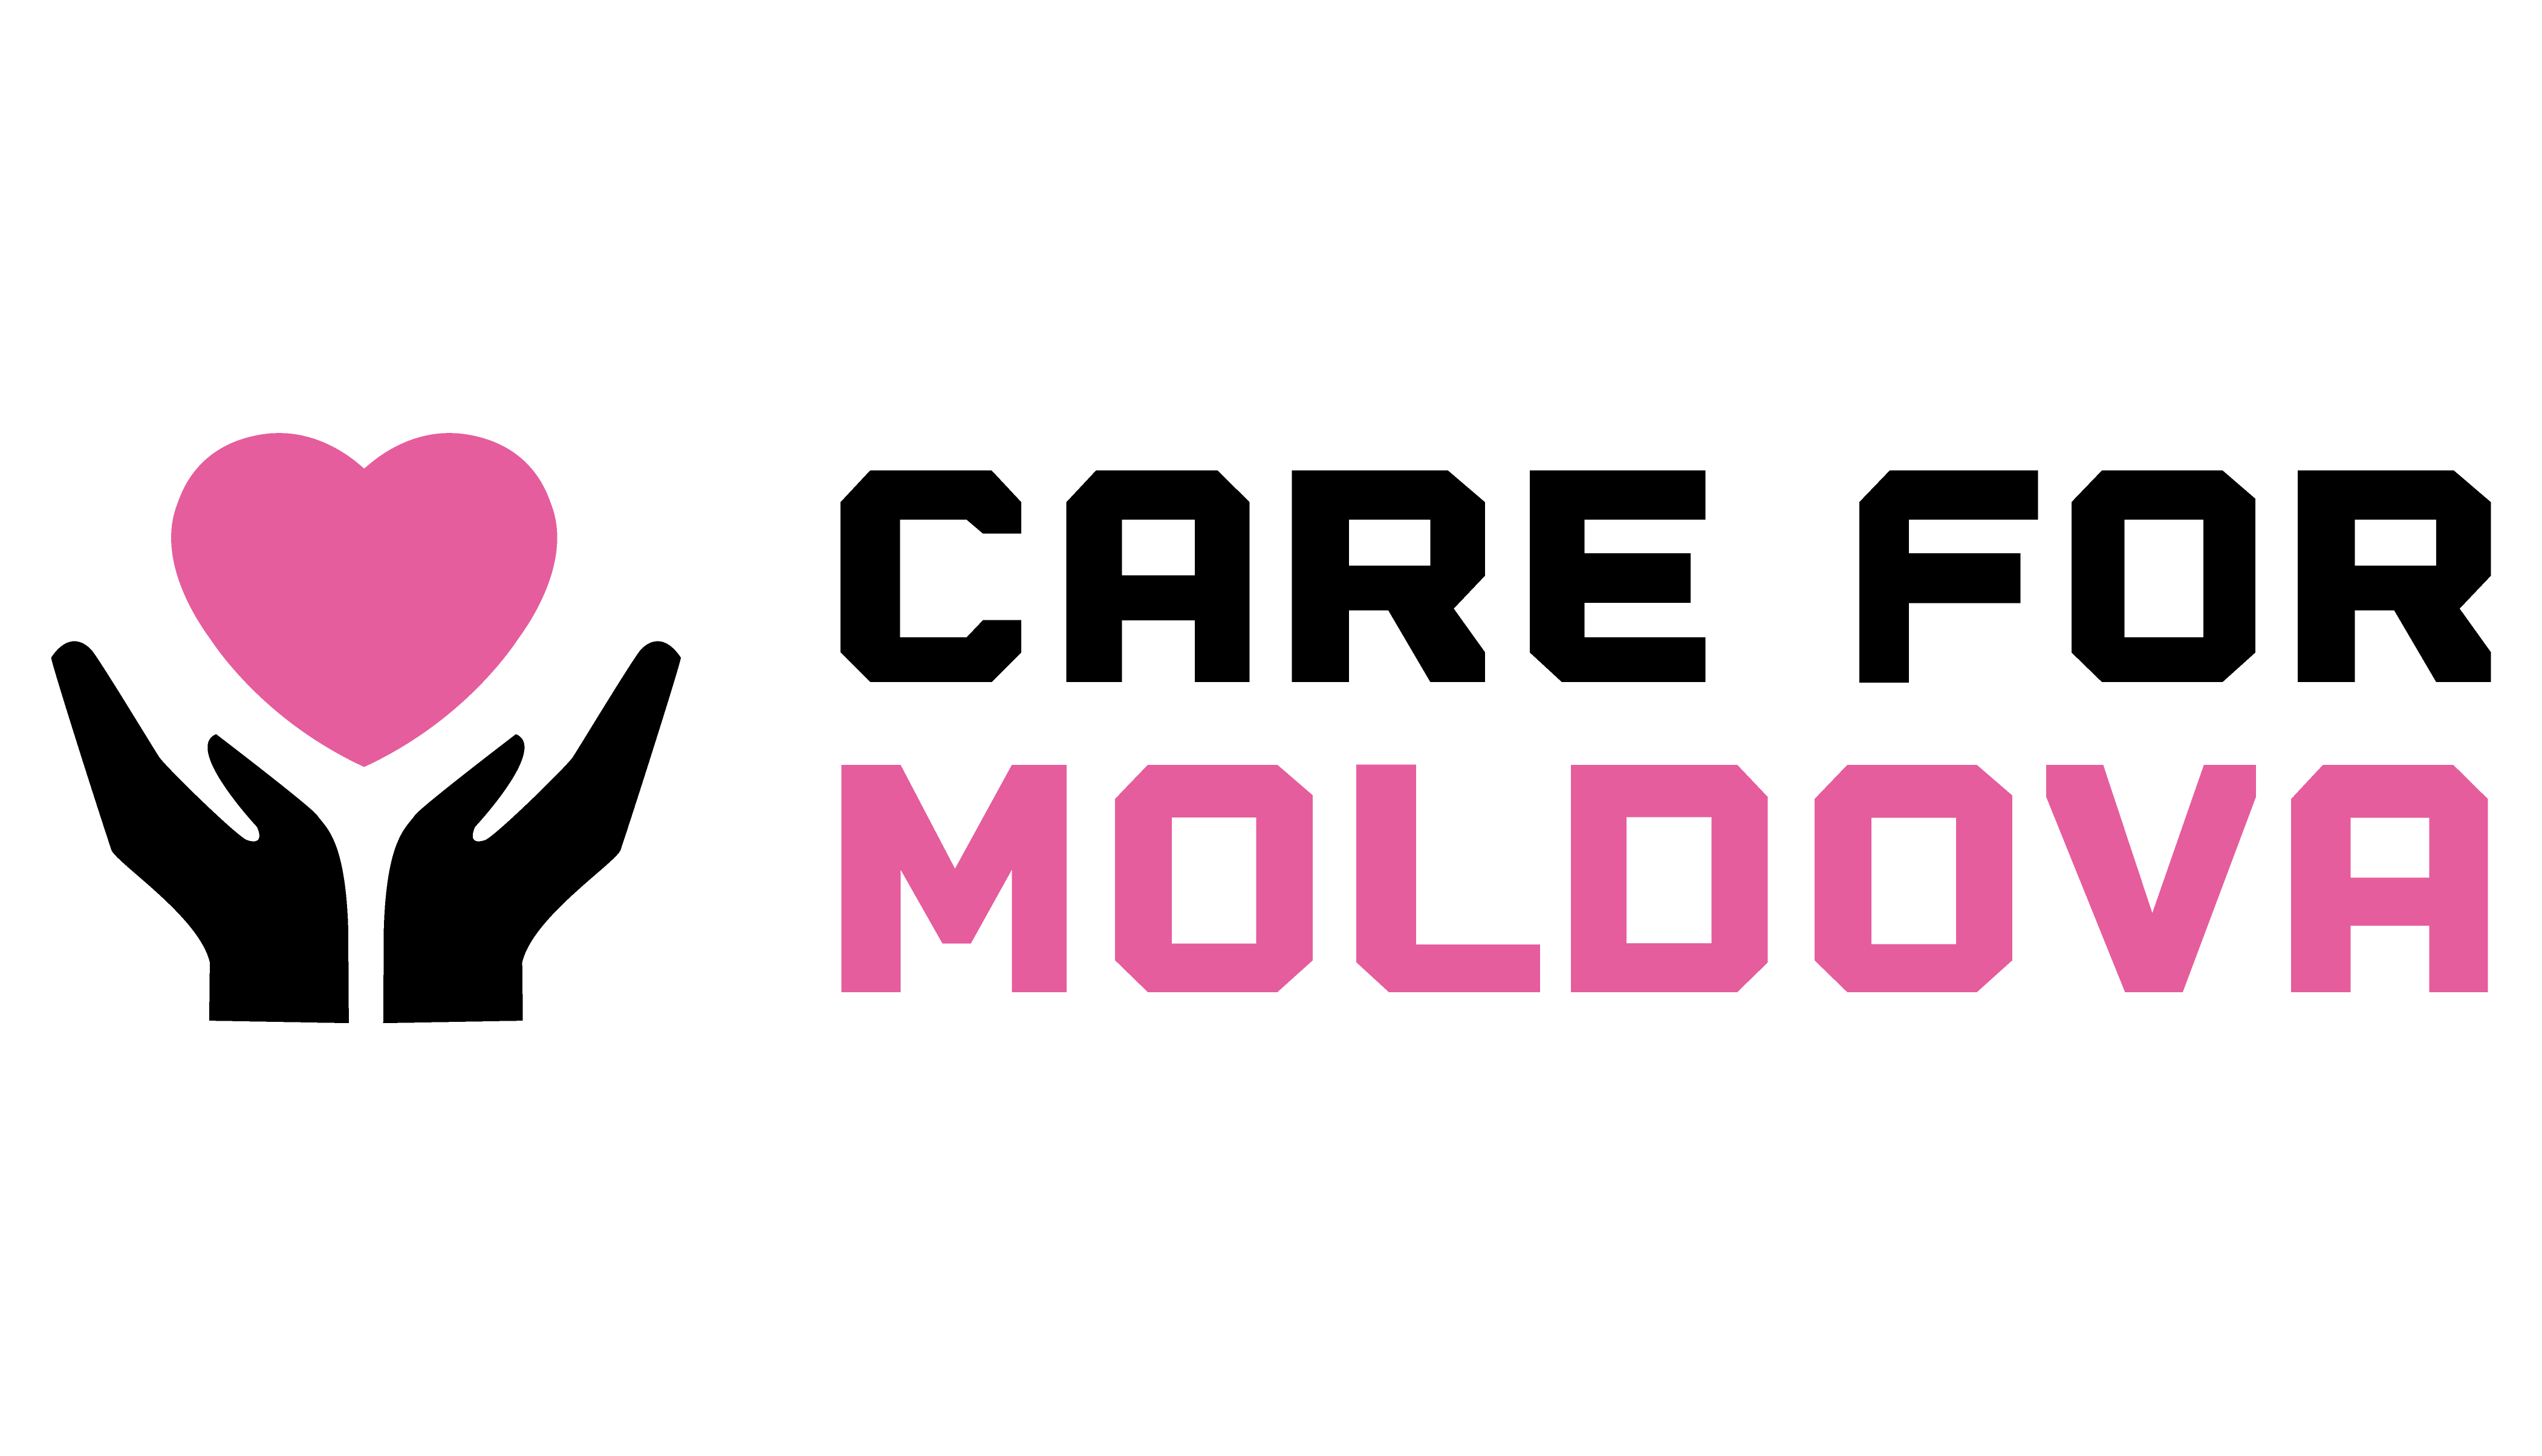 Care for Moldova